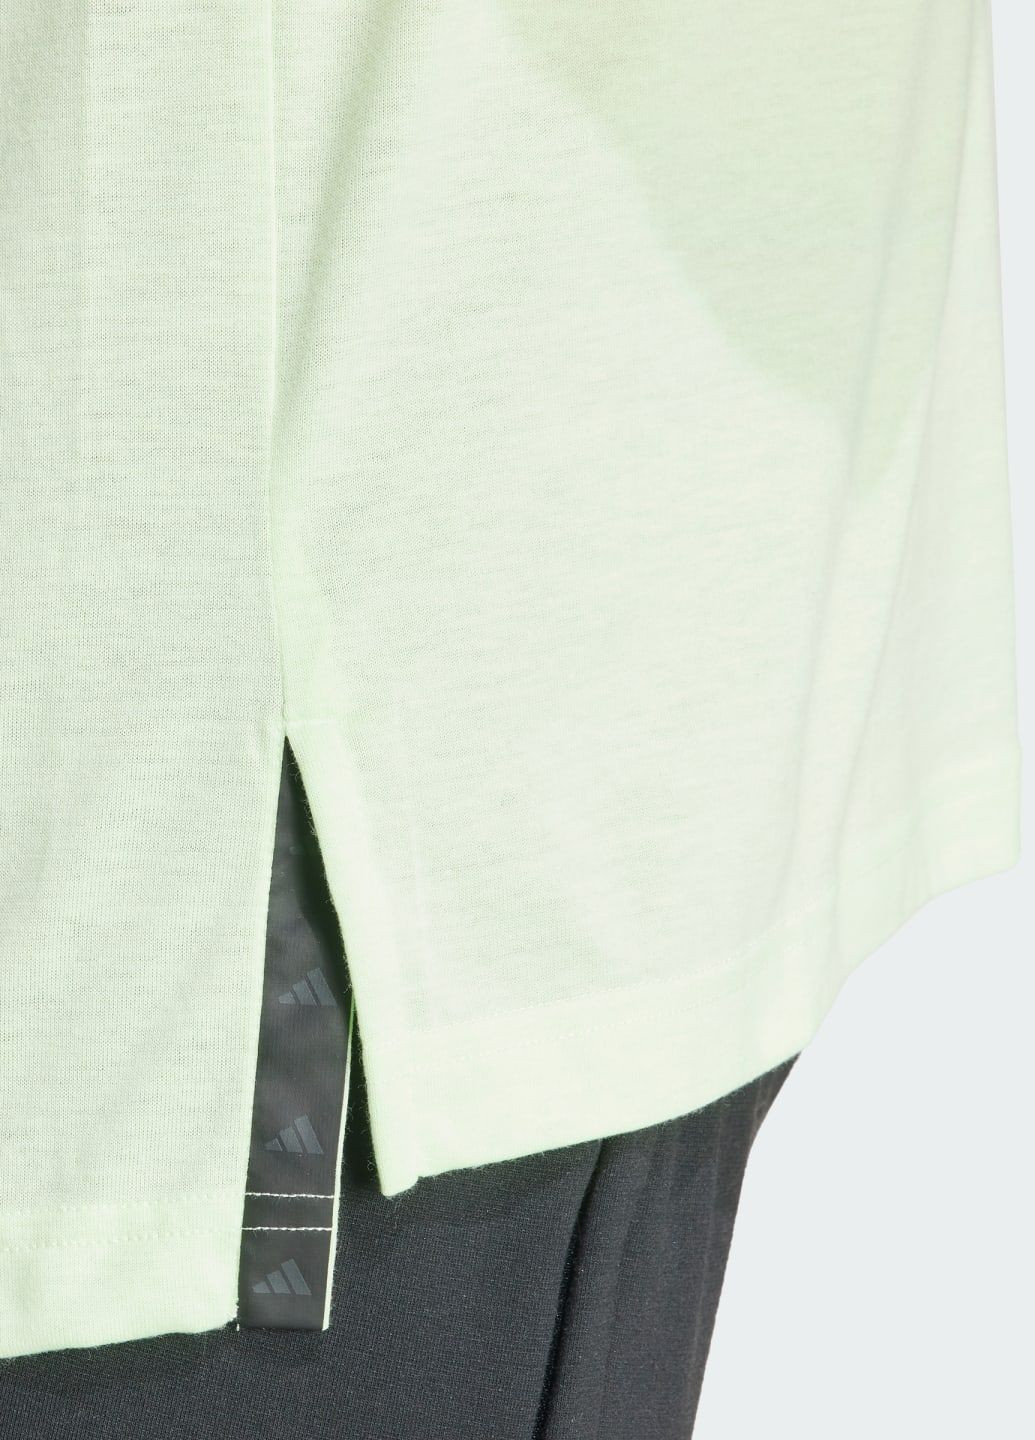 Зеленая футболка yoga training adidas